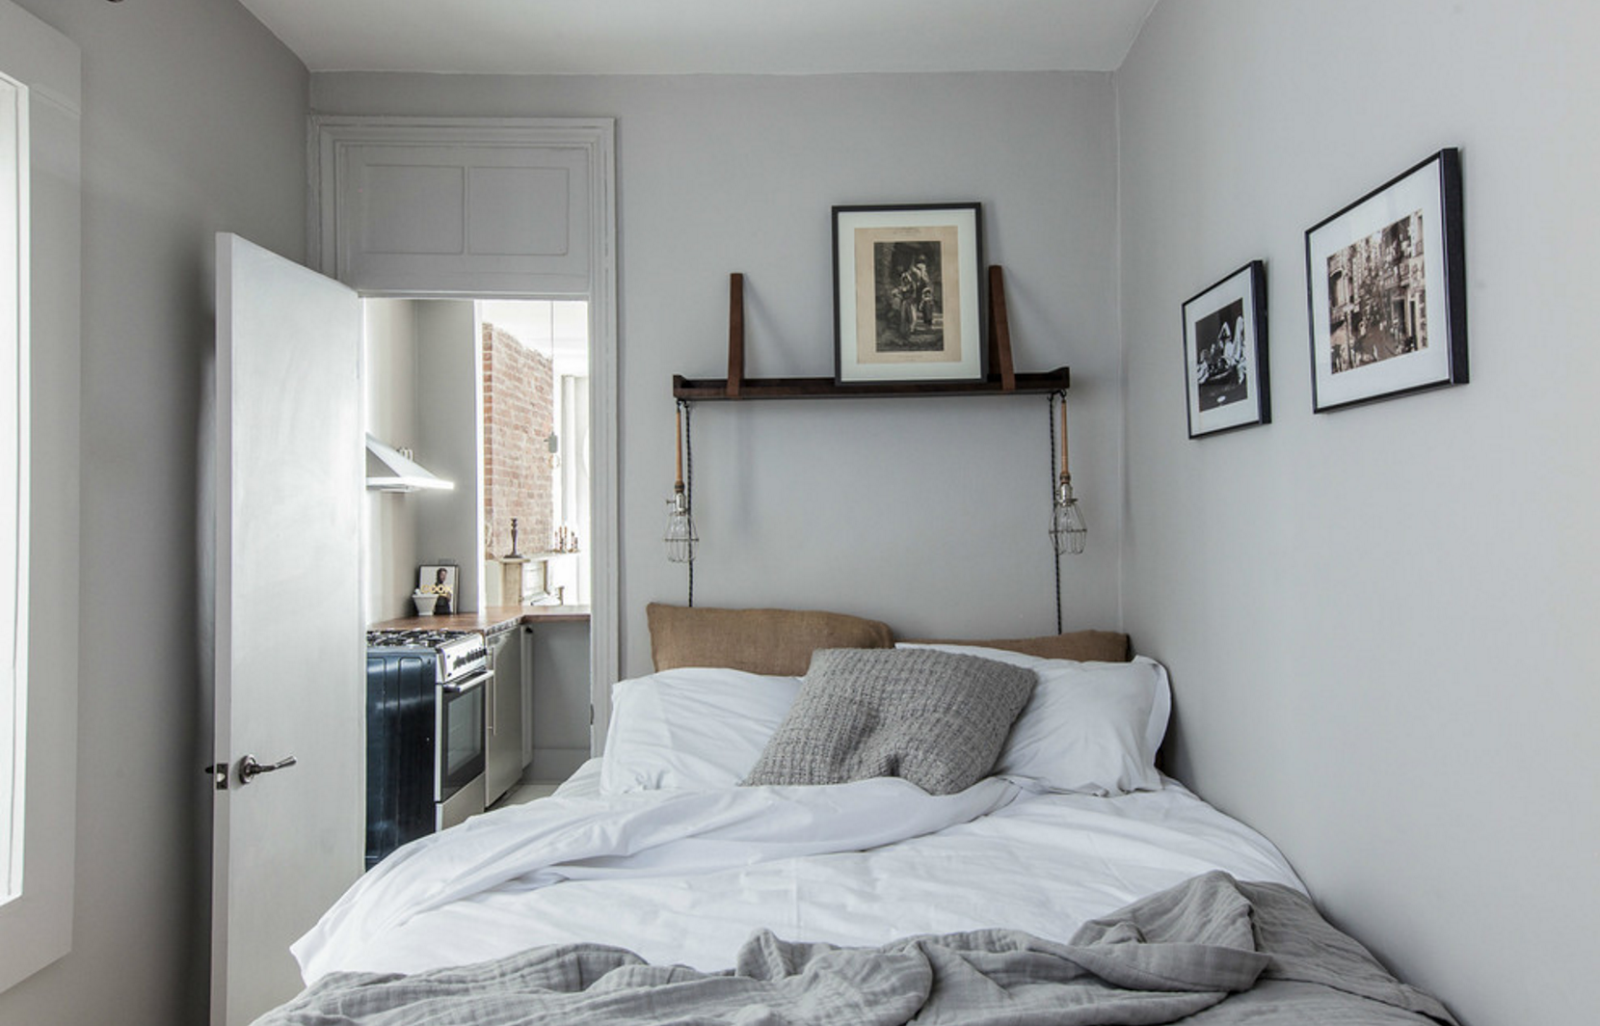 Desain Kamar Tidur Sederhana Minimalis Sobat Interior Rumah